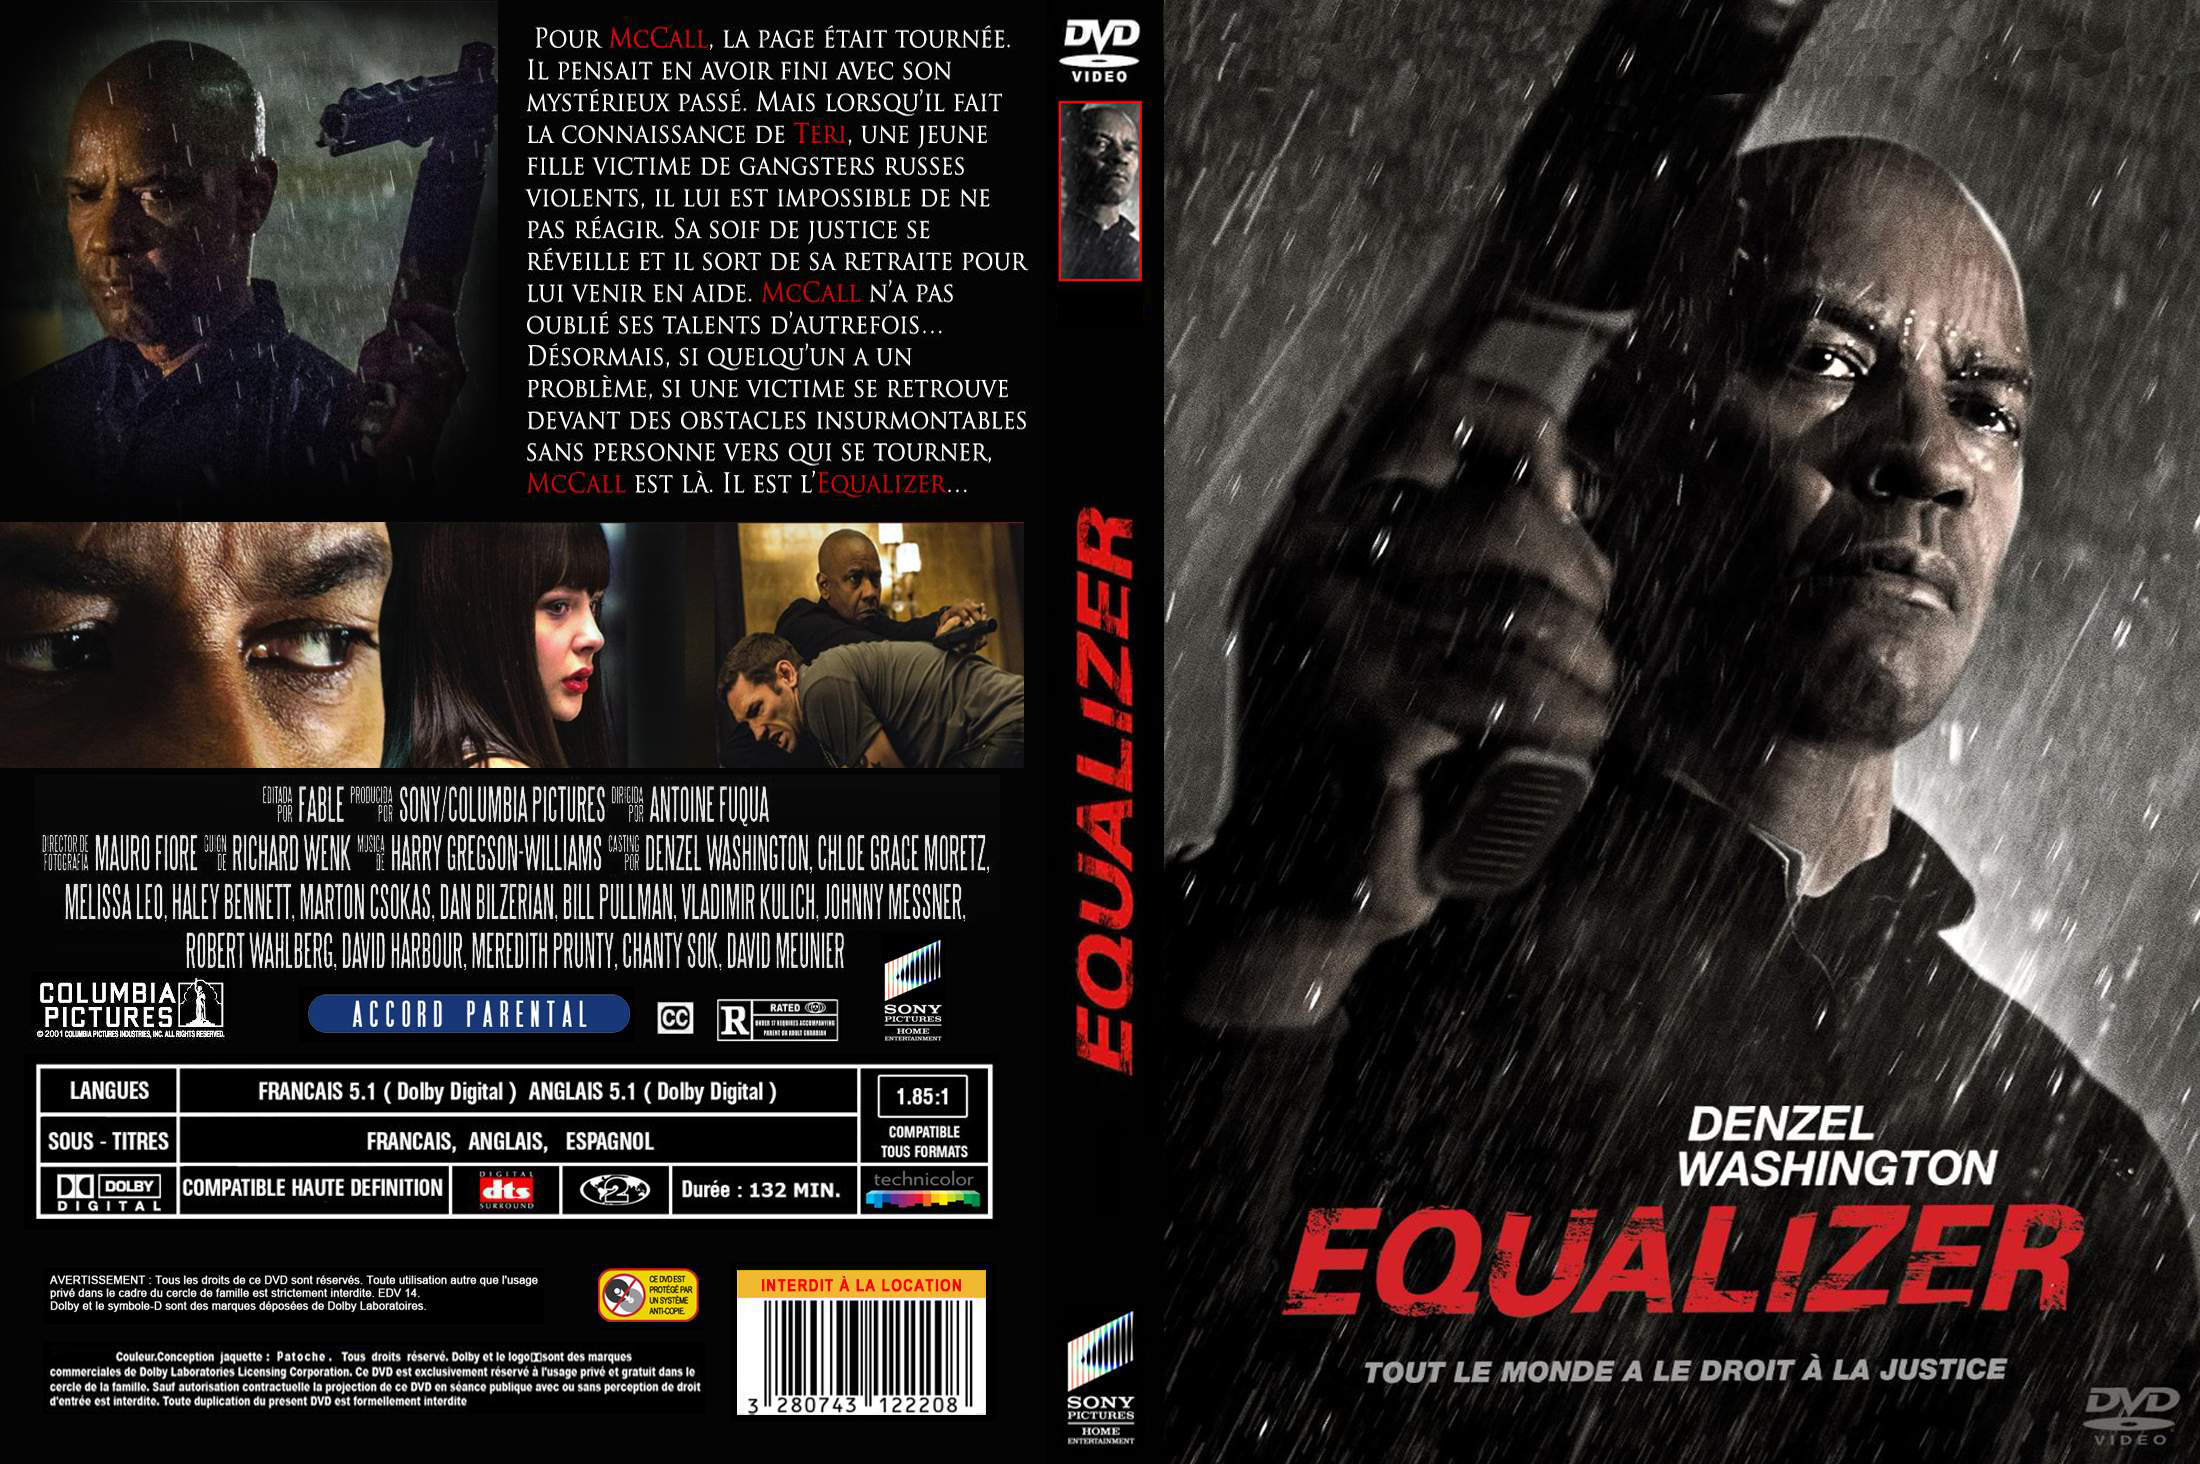 Jaquette DVD Equalizer custom v2